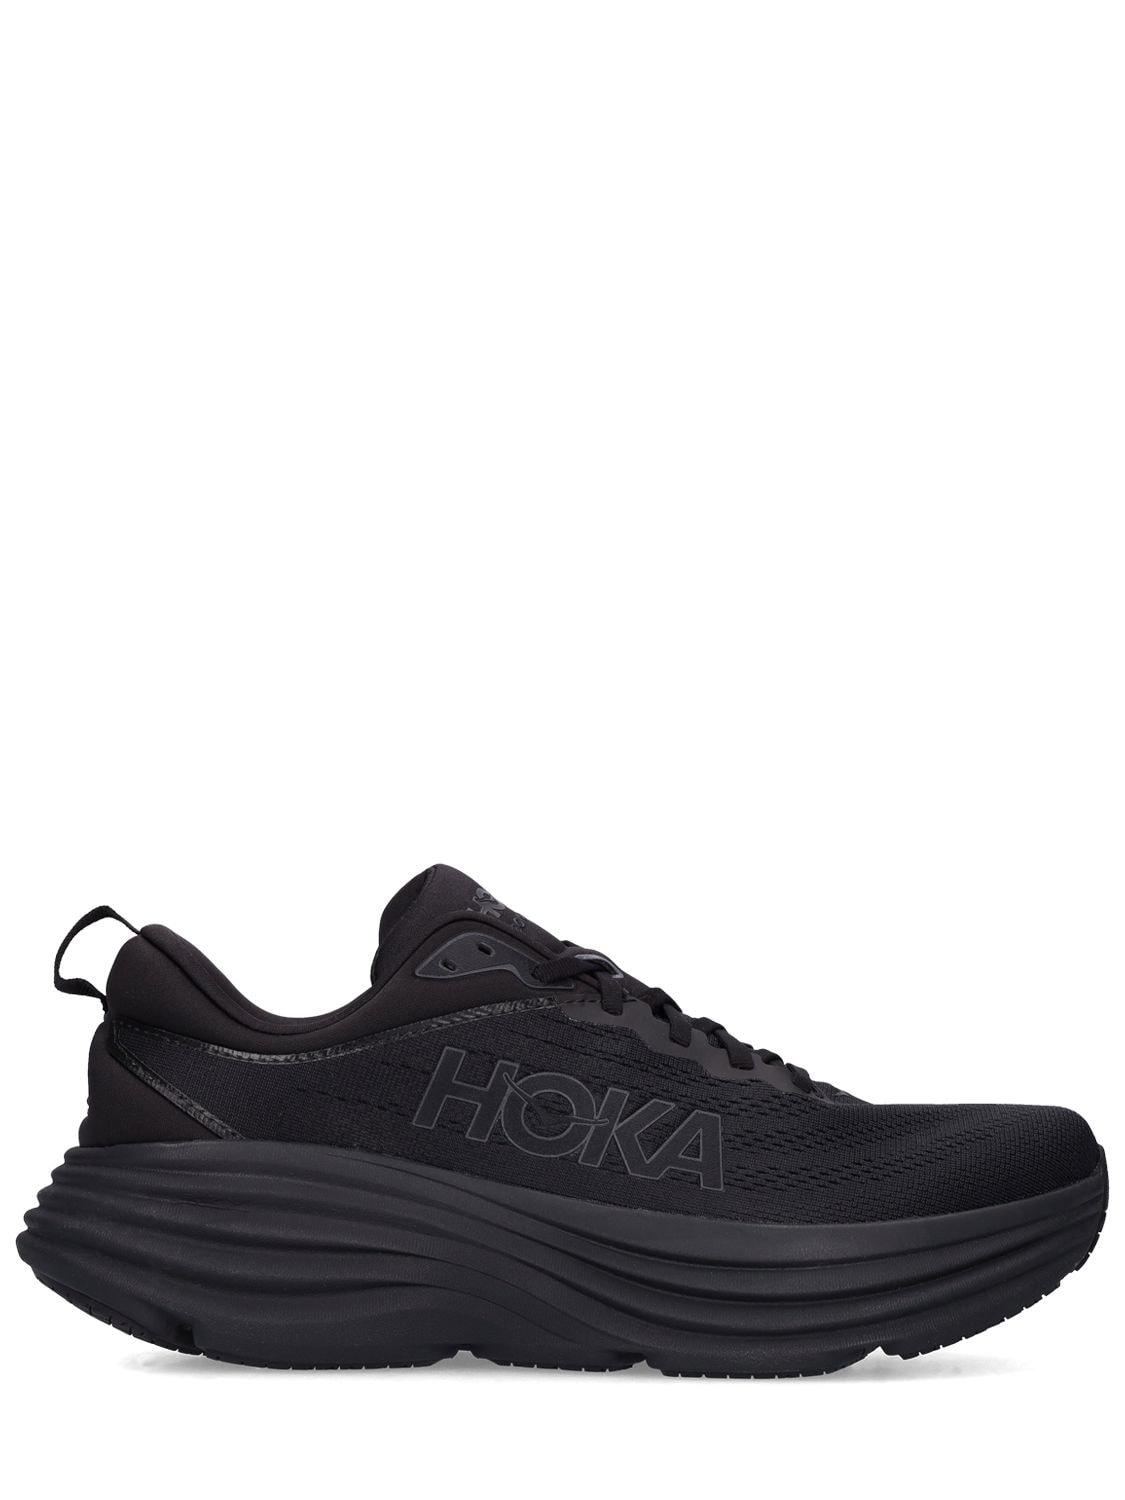 Hoka One One - Bondi 8 running sneakers - Black | Luisaviaroma